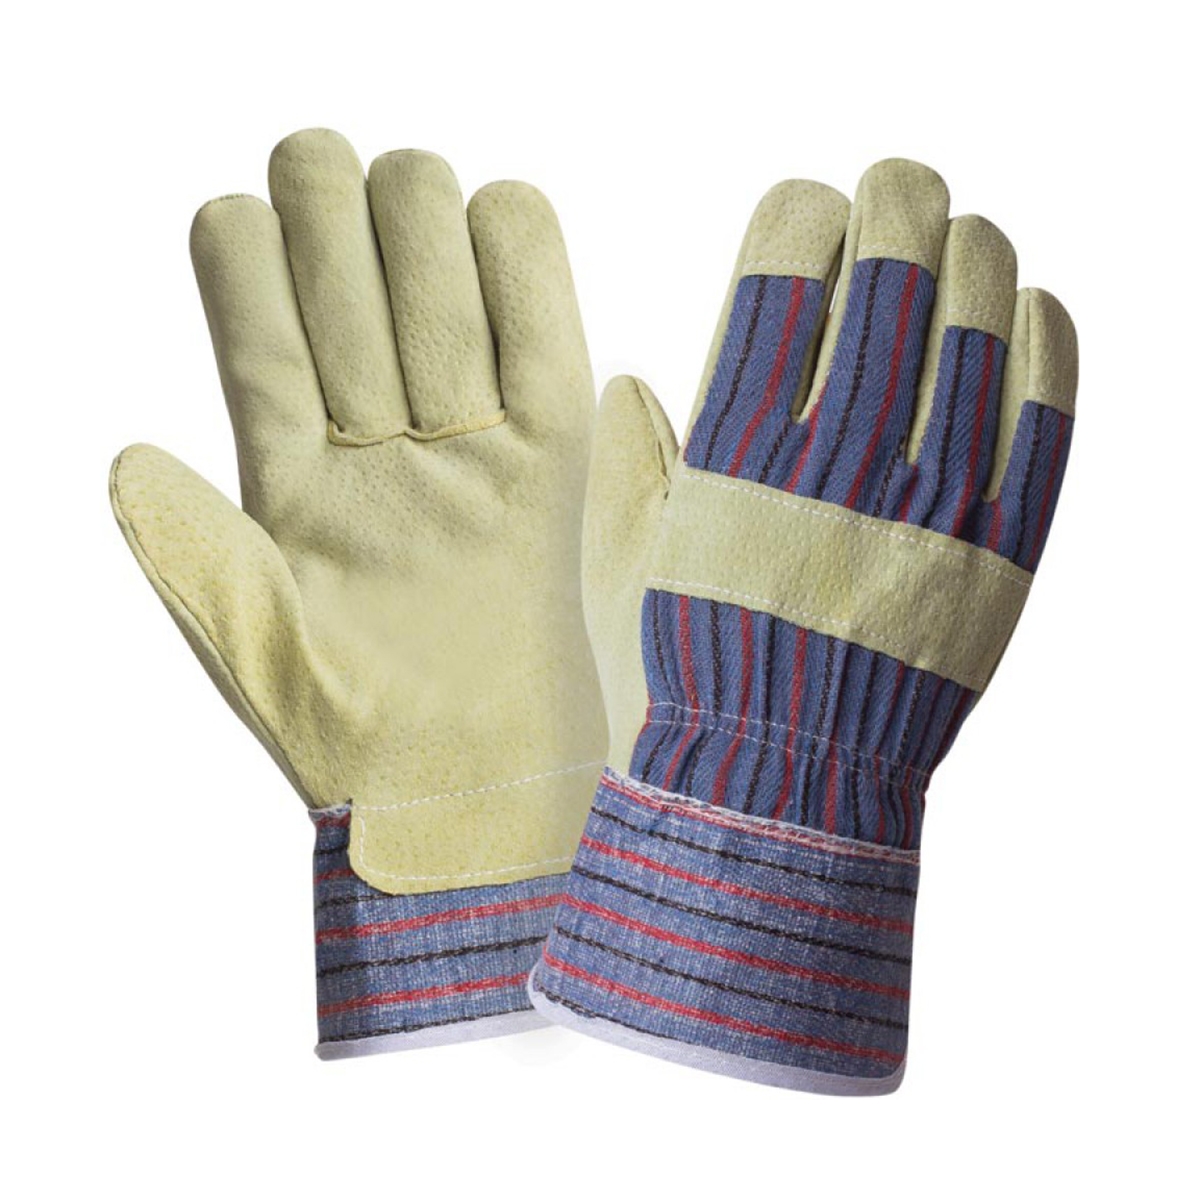 Перчатки спилковые комбинированные ПТК ЛЕОН 25761, размер 9, 1 пара спилковые комбинированные перчатки armprotect